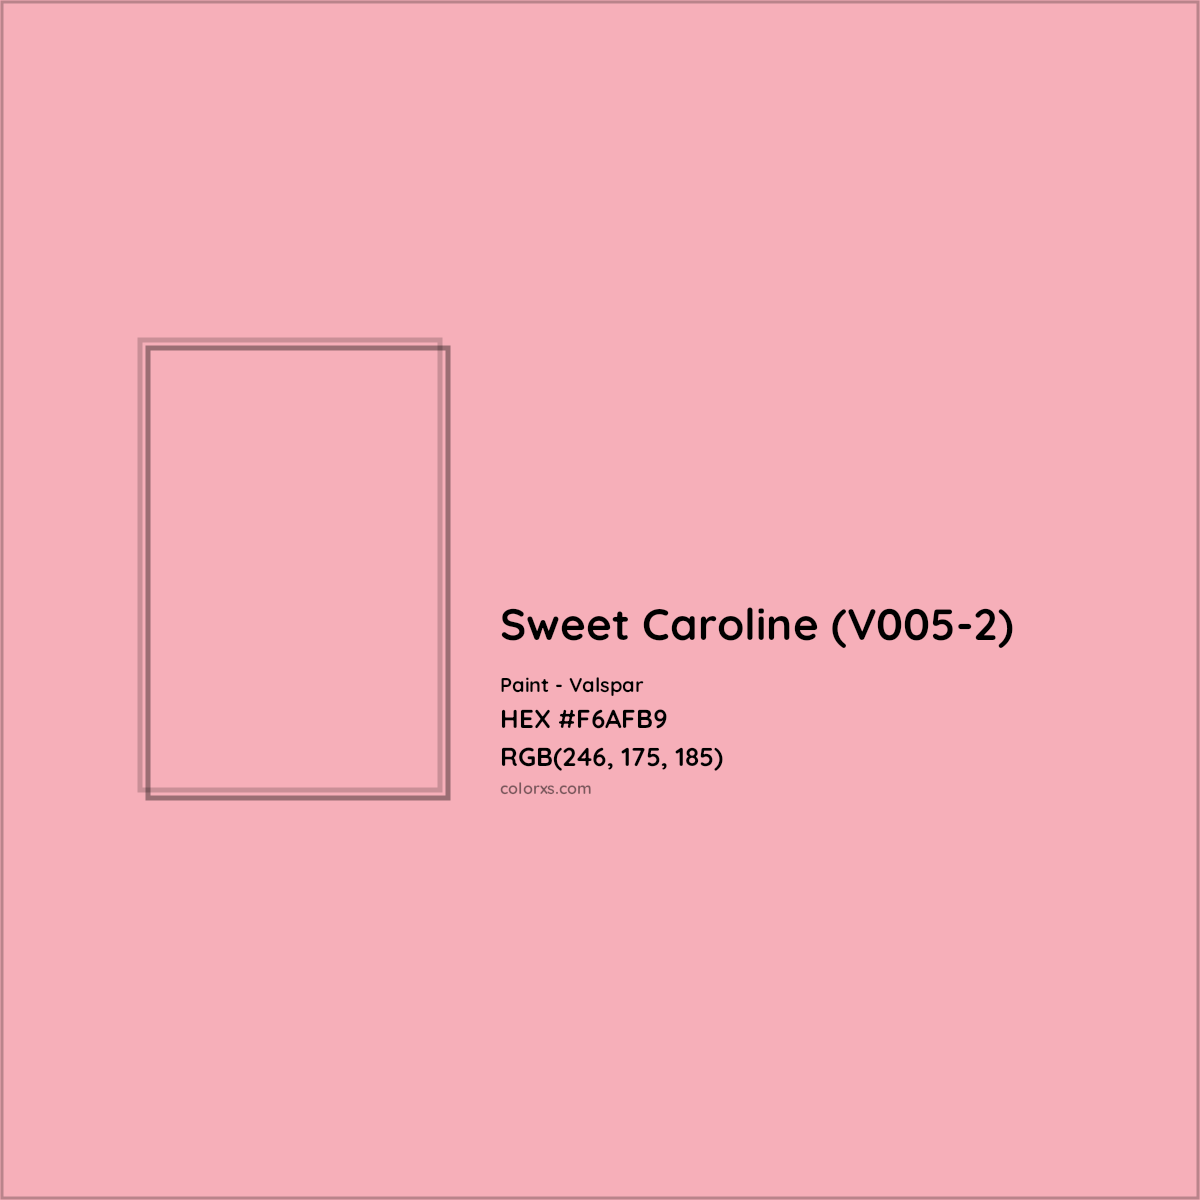 HEX #F6AFB9 Sweet Caroline (V005-2) Paint Valspar - Color Code